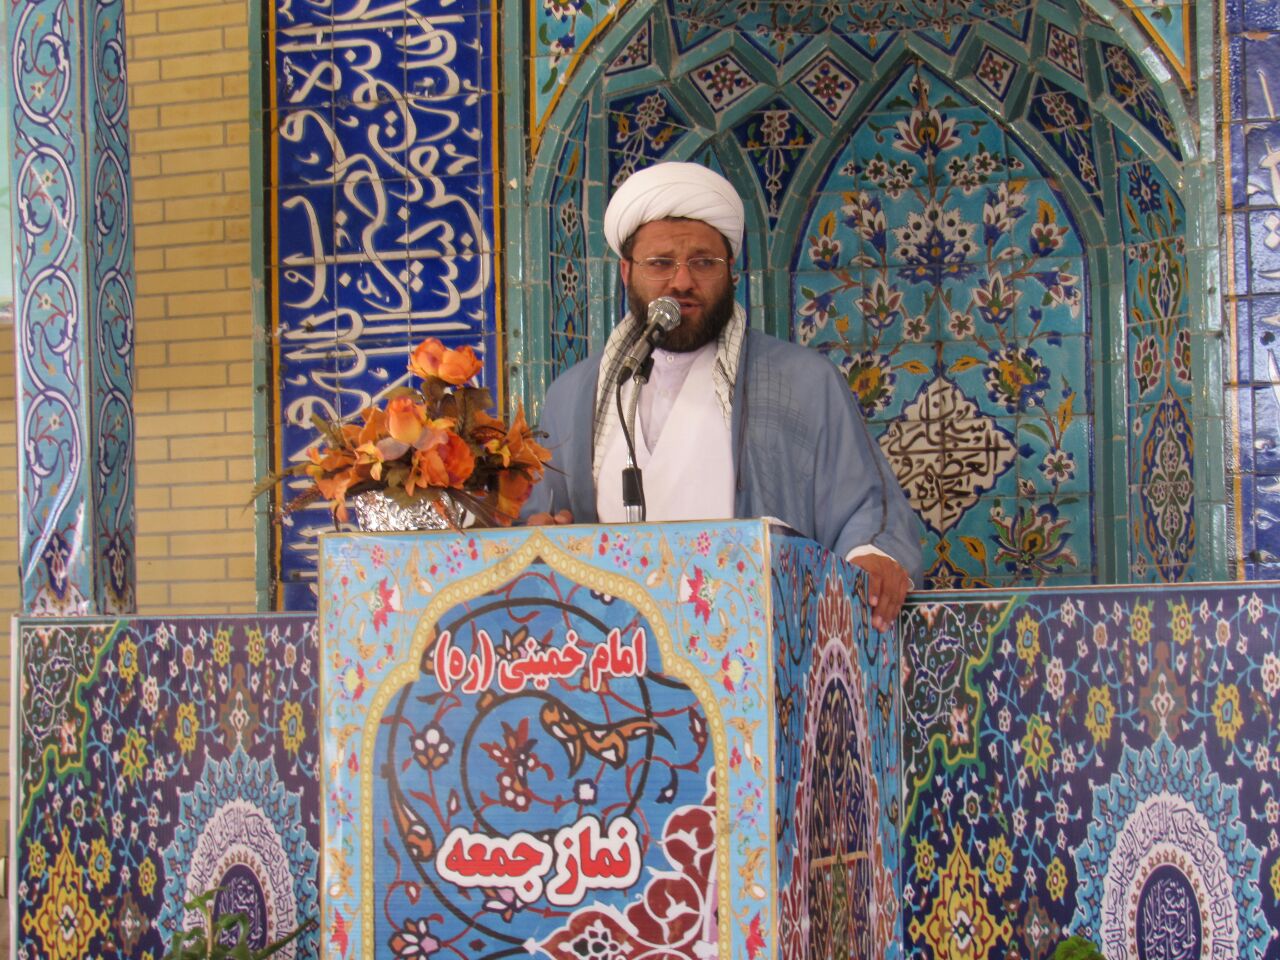 شهید حججی نماد عزت و اقتدار ایران اسلامی است/ مسجد بهترین مکان برای بیمه معنوی فرزندان است